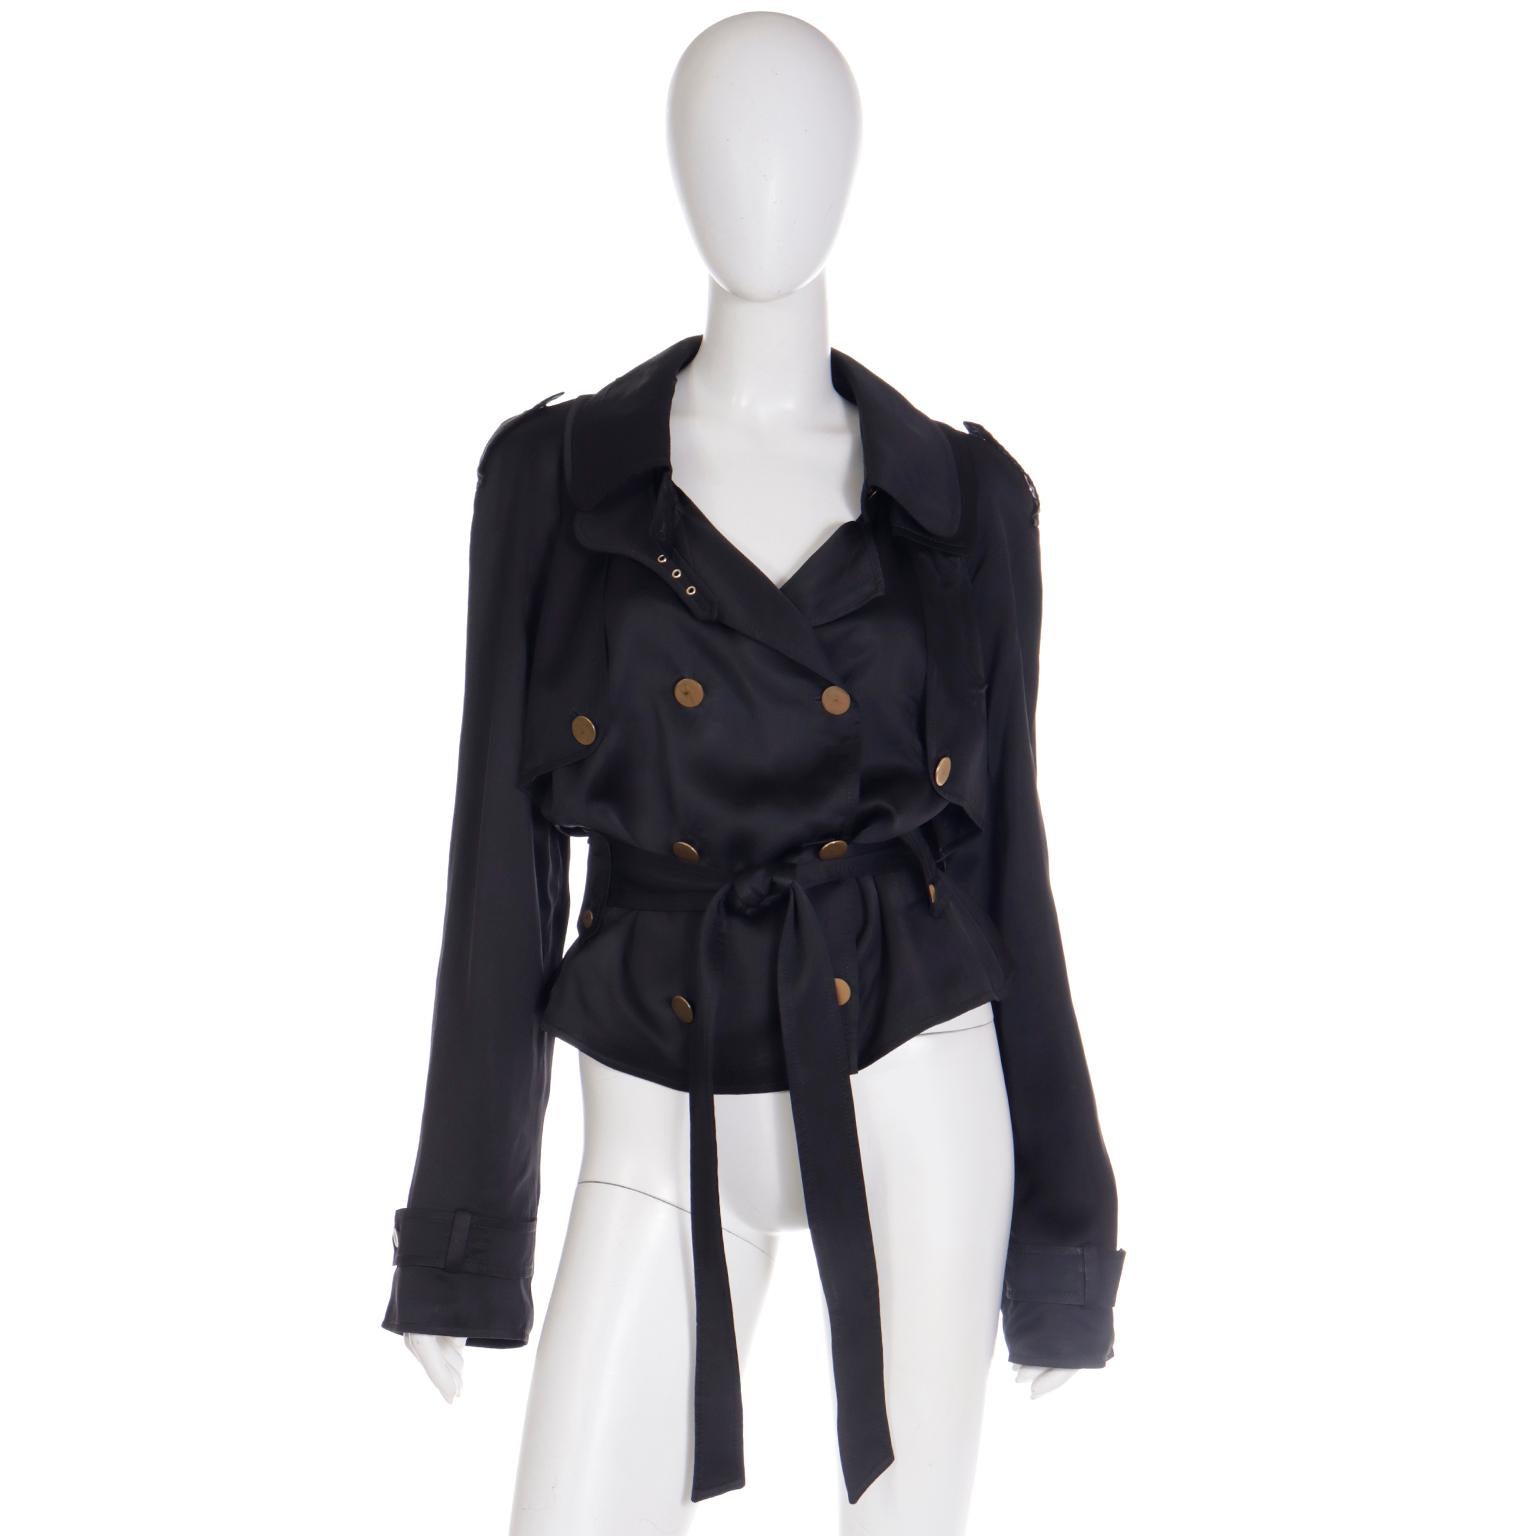 Diese Vintage-Jacke von Dolce & Gabbana ist der perfekte Cropped Trench! Diese doppelreihige Jacke hat alle charakteristischen Merkmale eines Trenchcoats wie Schulterklappen, Sturmlaschen, Knopfleisten und einen Taillengürtel. Wir lieben den Look